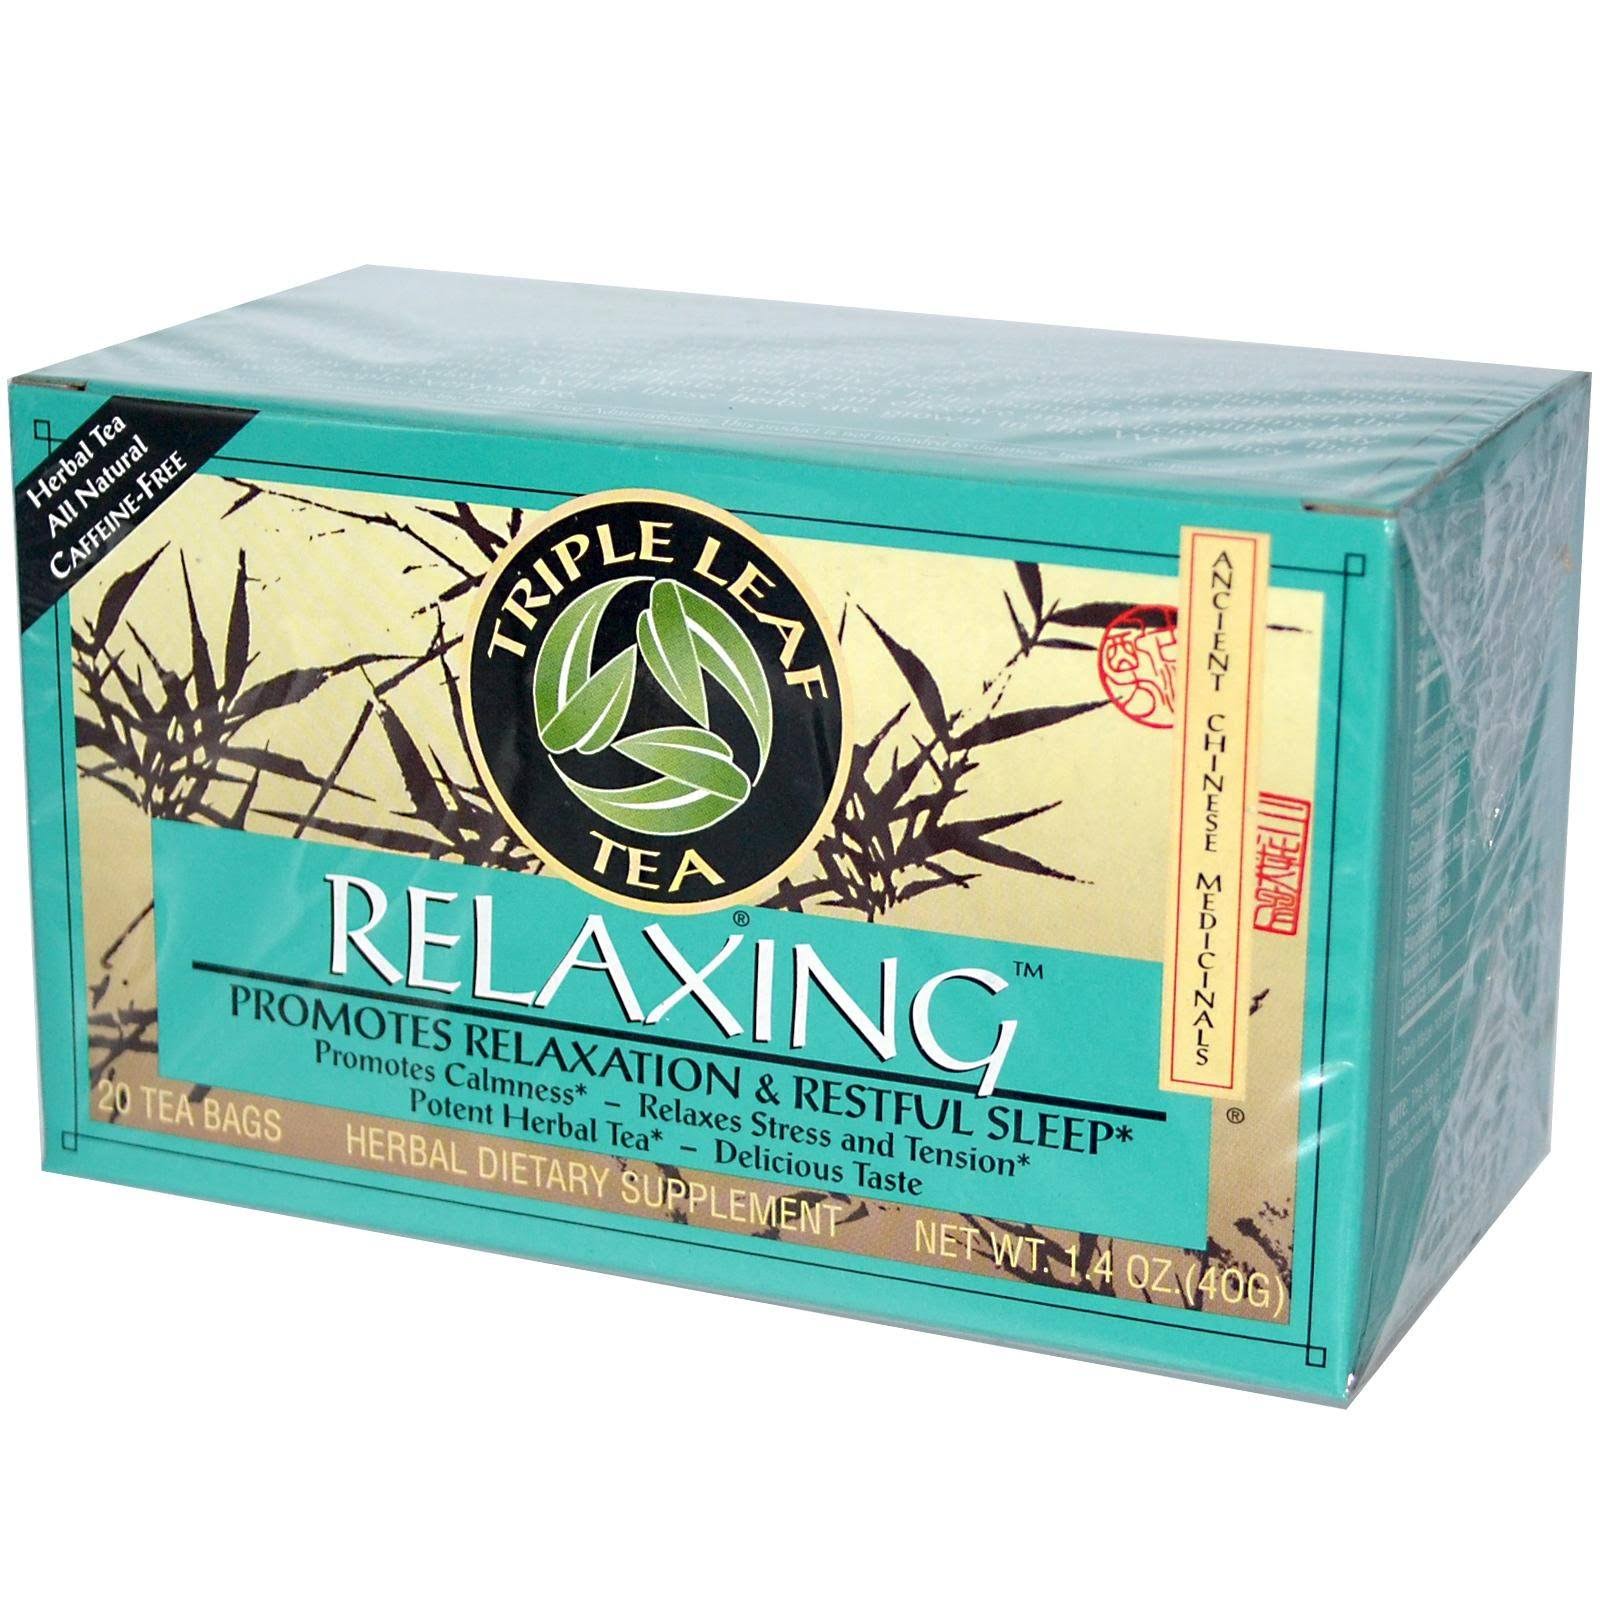 Triple Leaf Relaxing Herbal Tea - 20 Bags